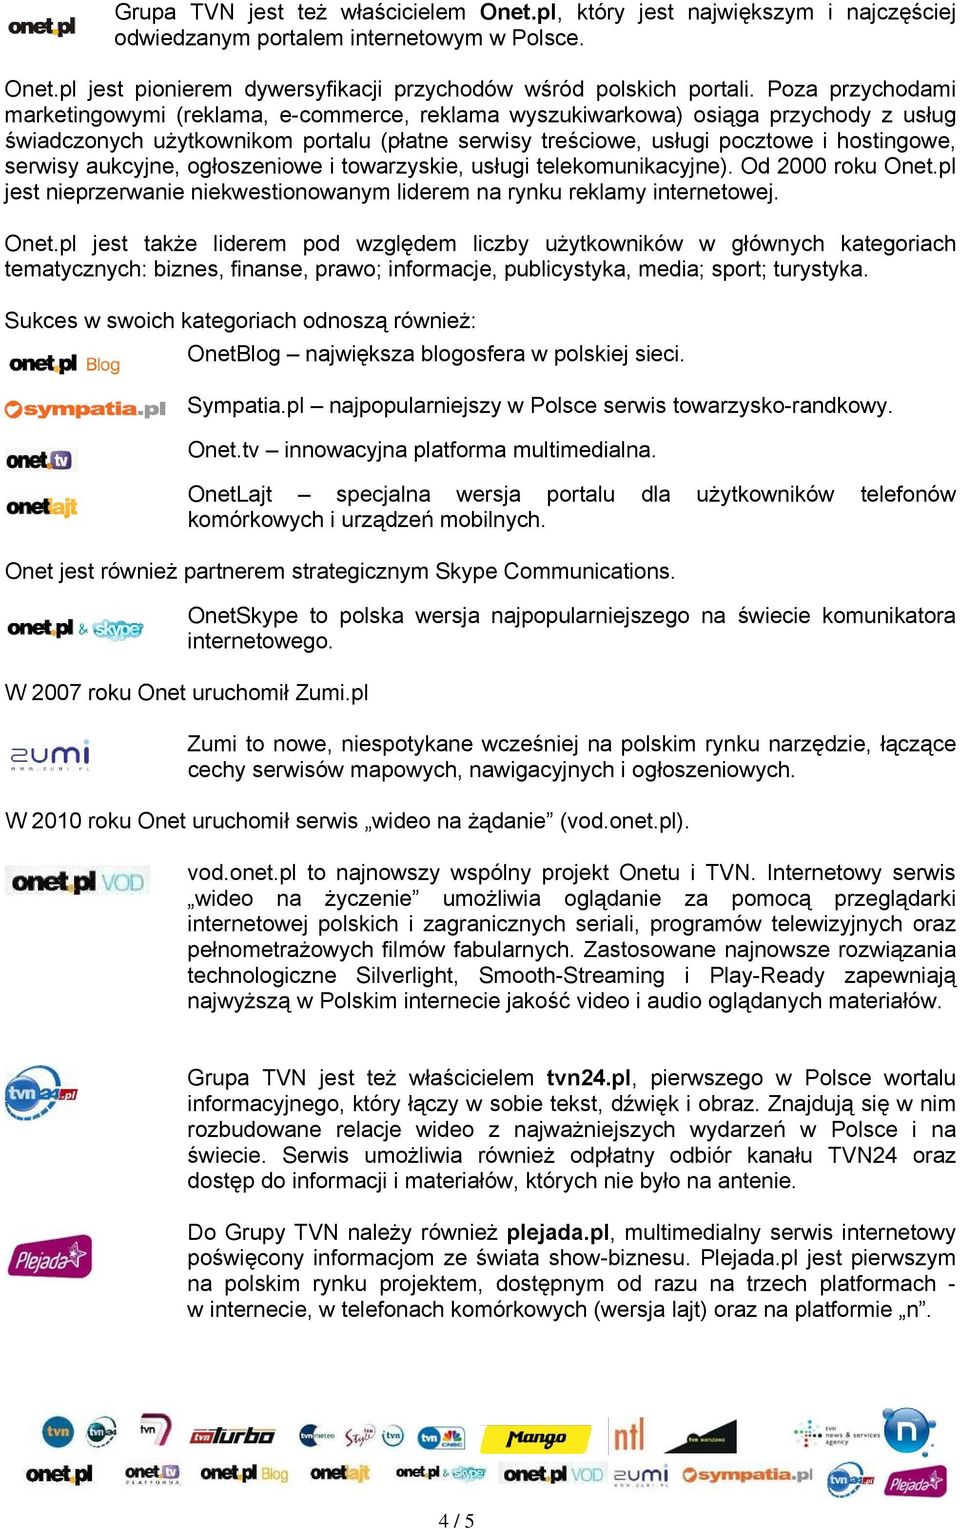 serwisy aukcyjne, ogłoszeniowe i towarzyskie, usługi telekomunikacyjne). Od 2000 roku Onet.